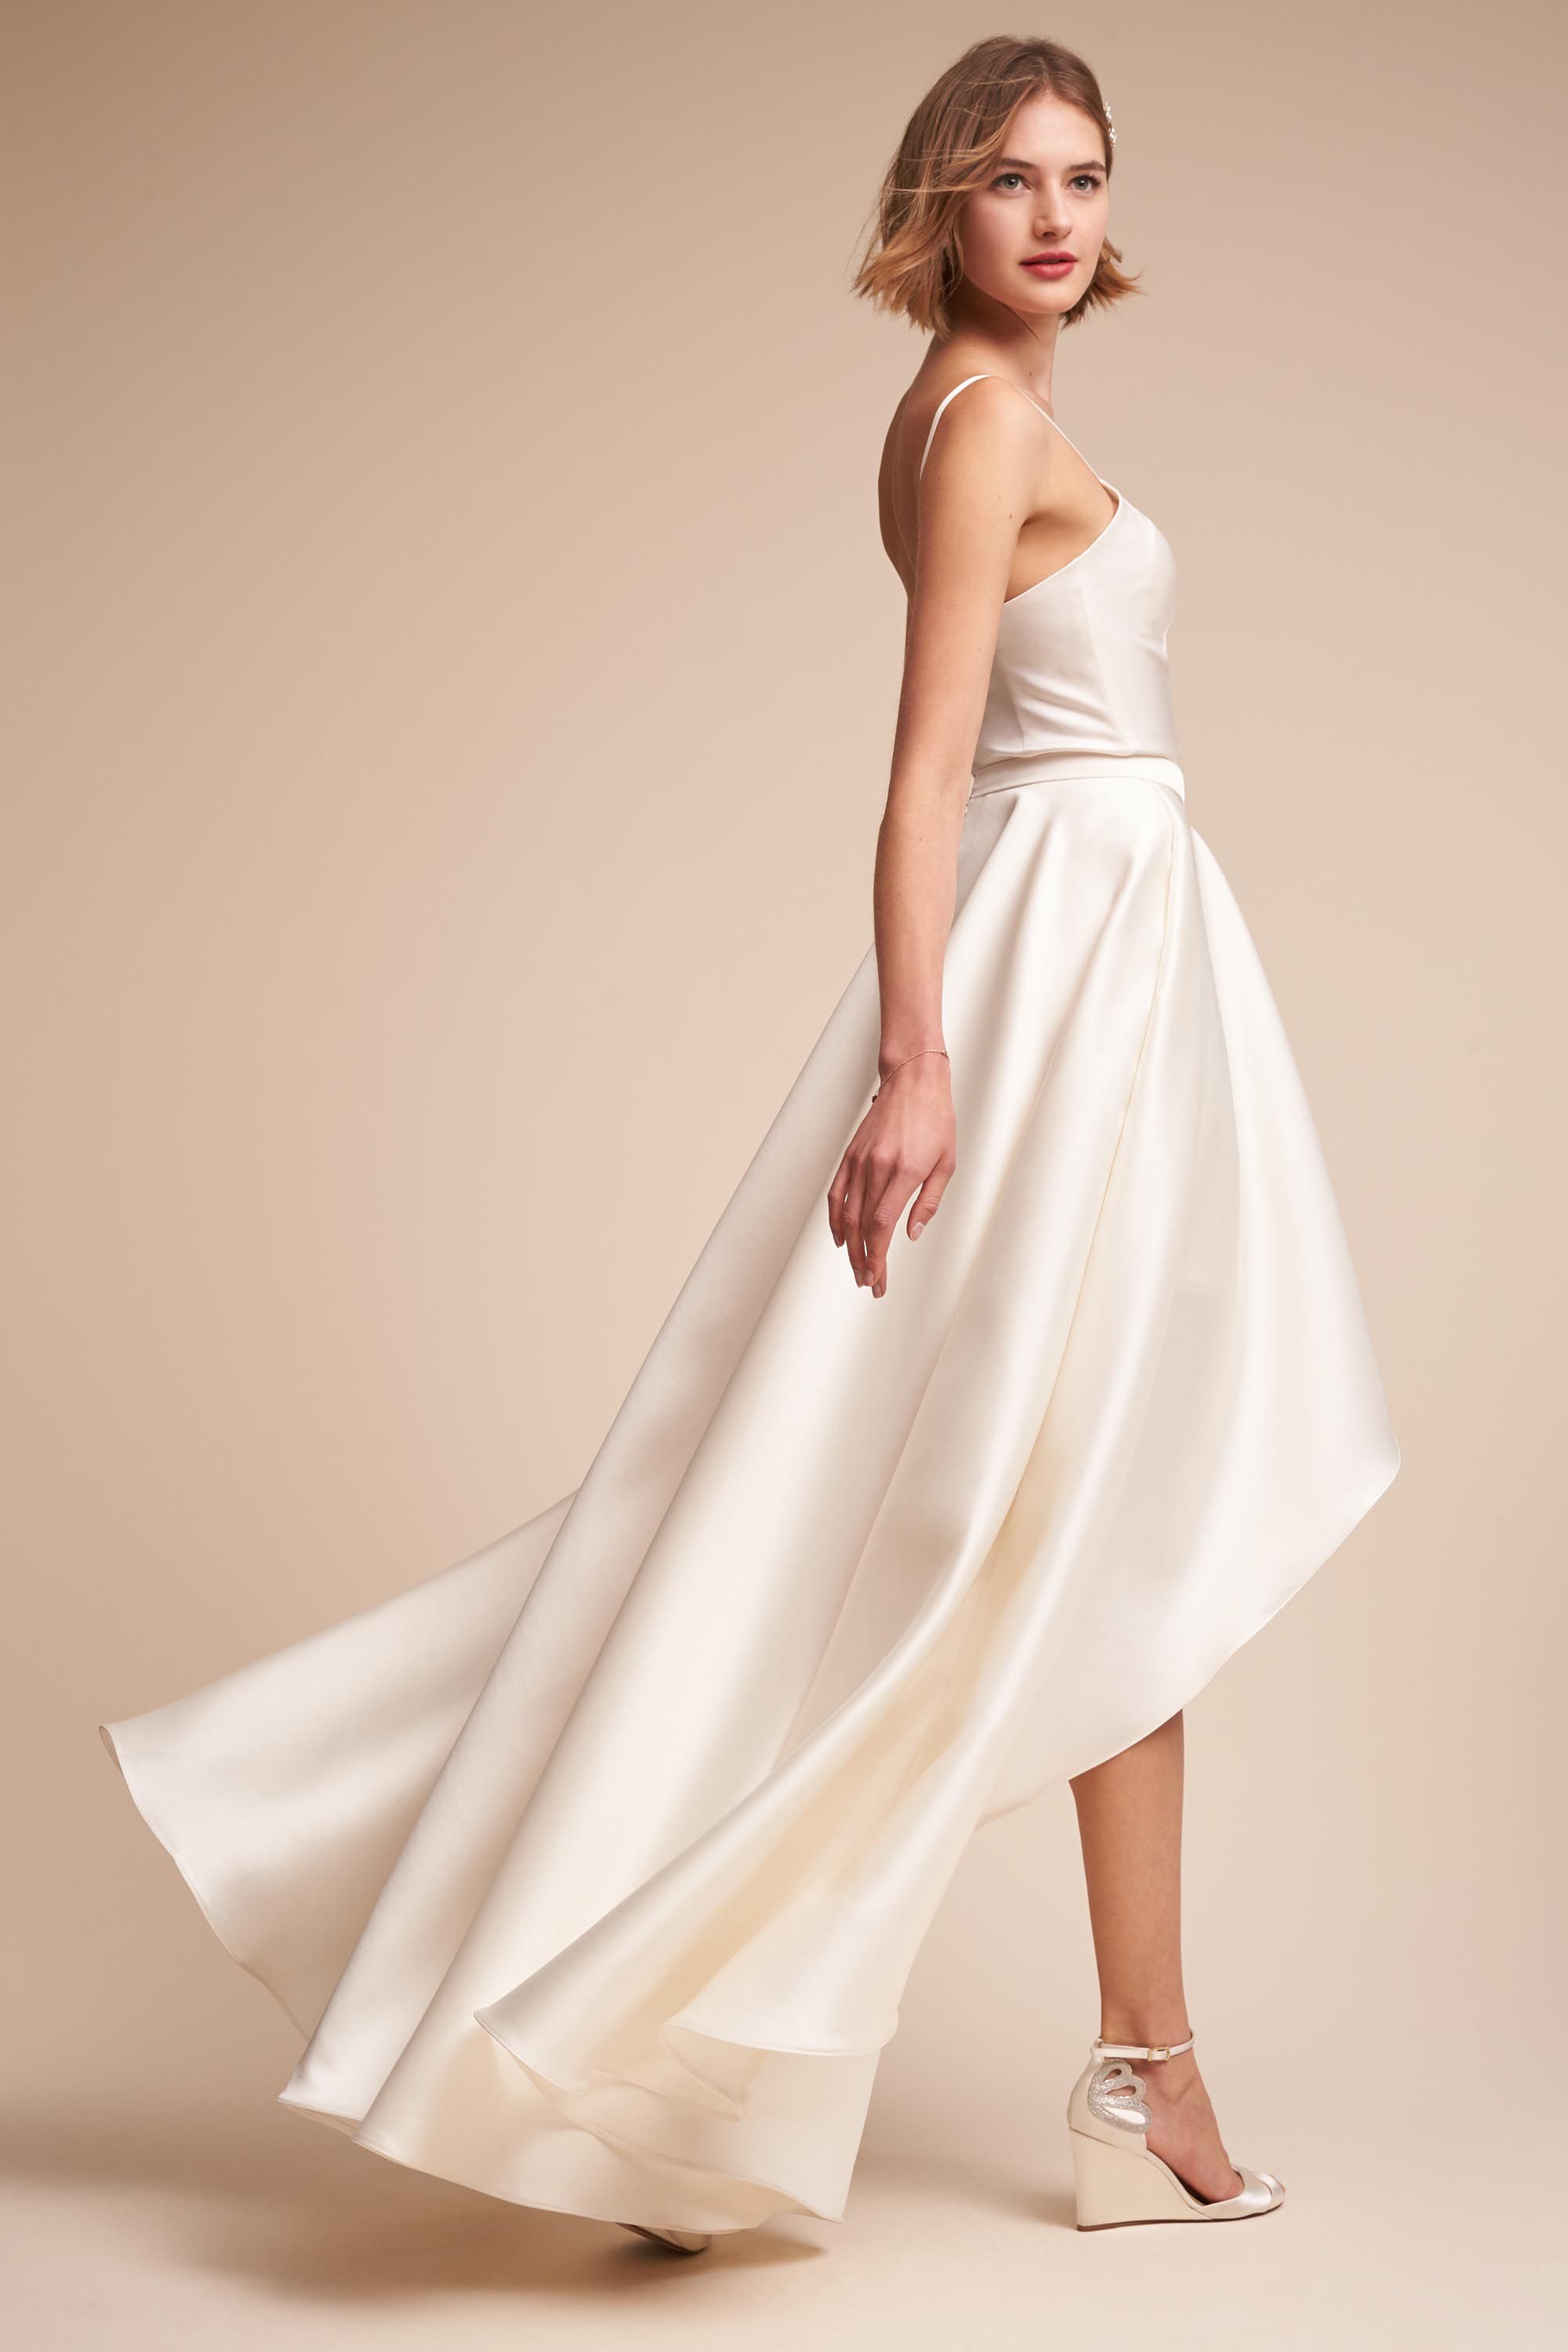 Jewel Bodysuit & Zelda Skirt in Bride | BHLDN